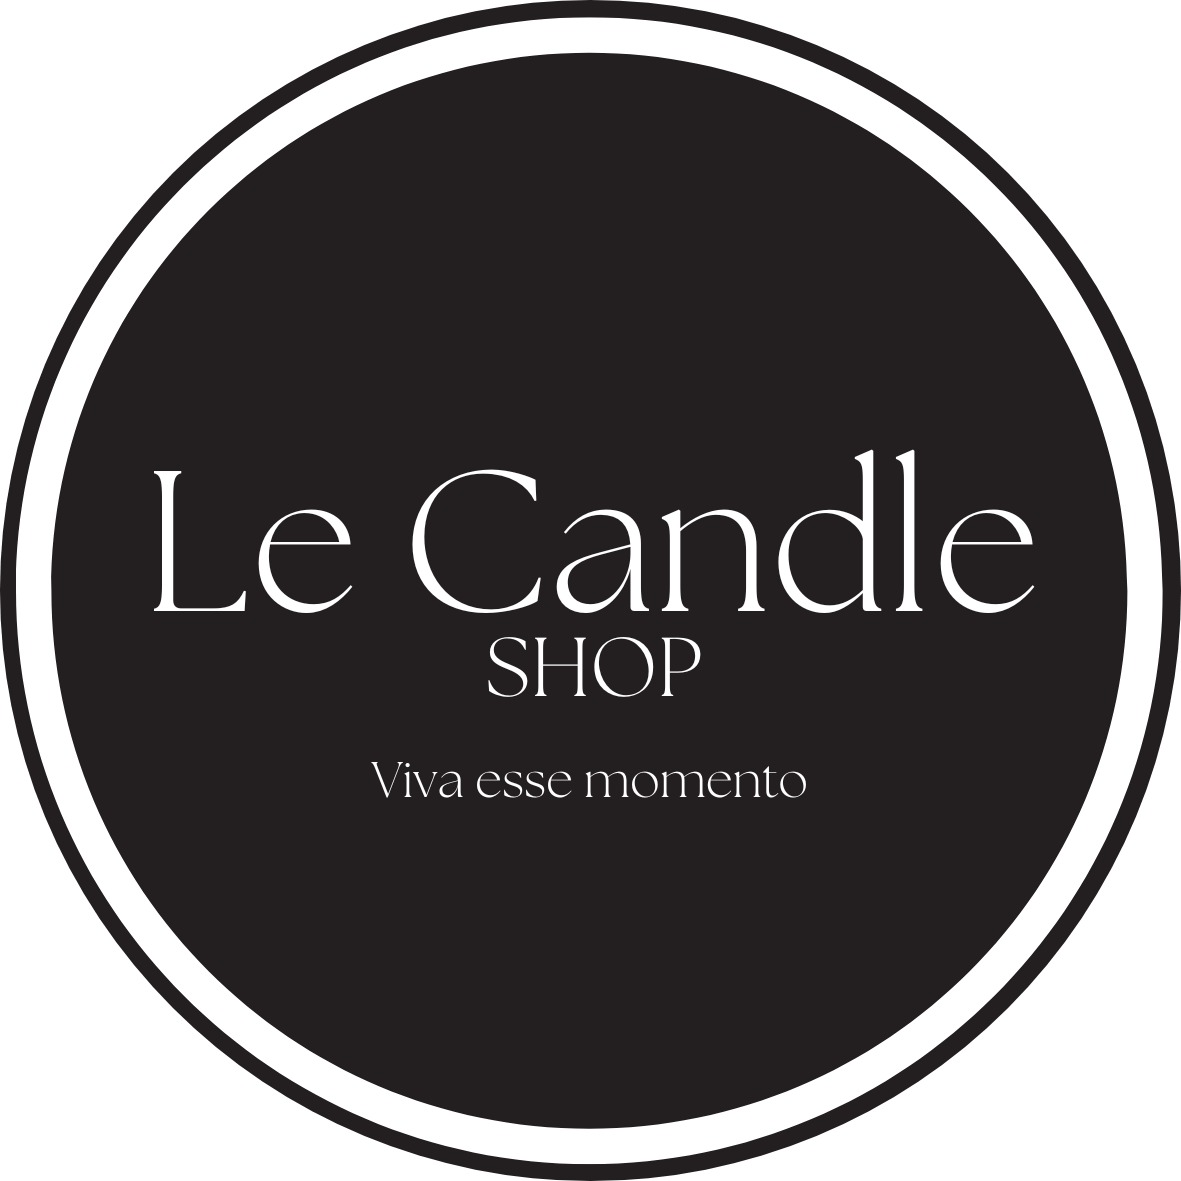  Le Candle Shop